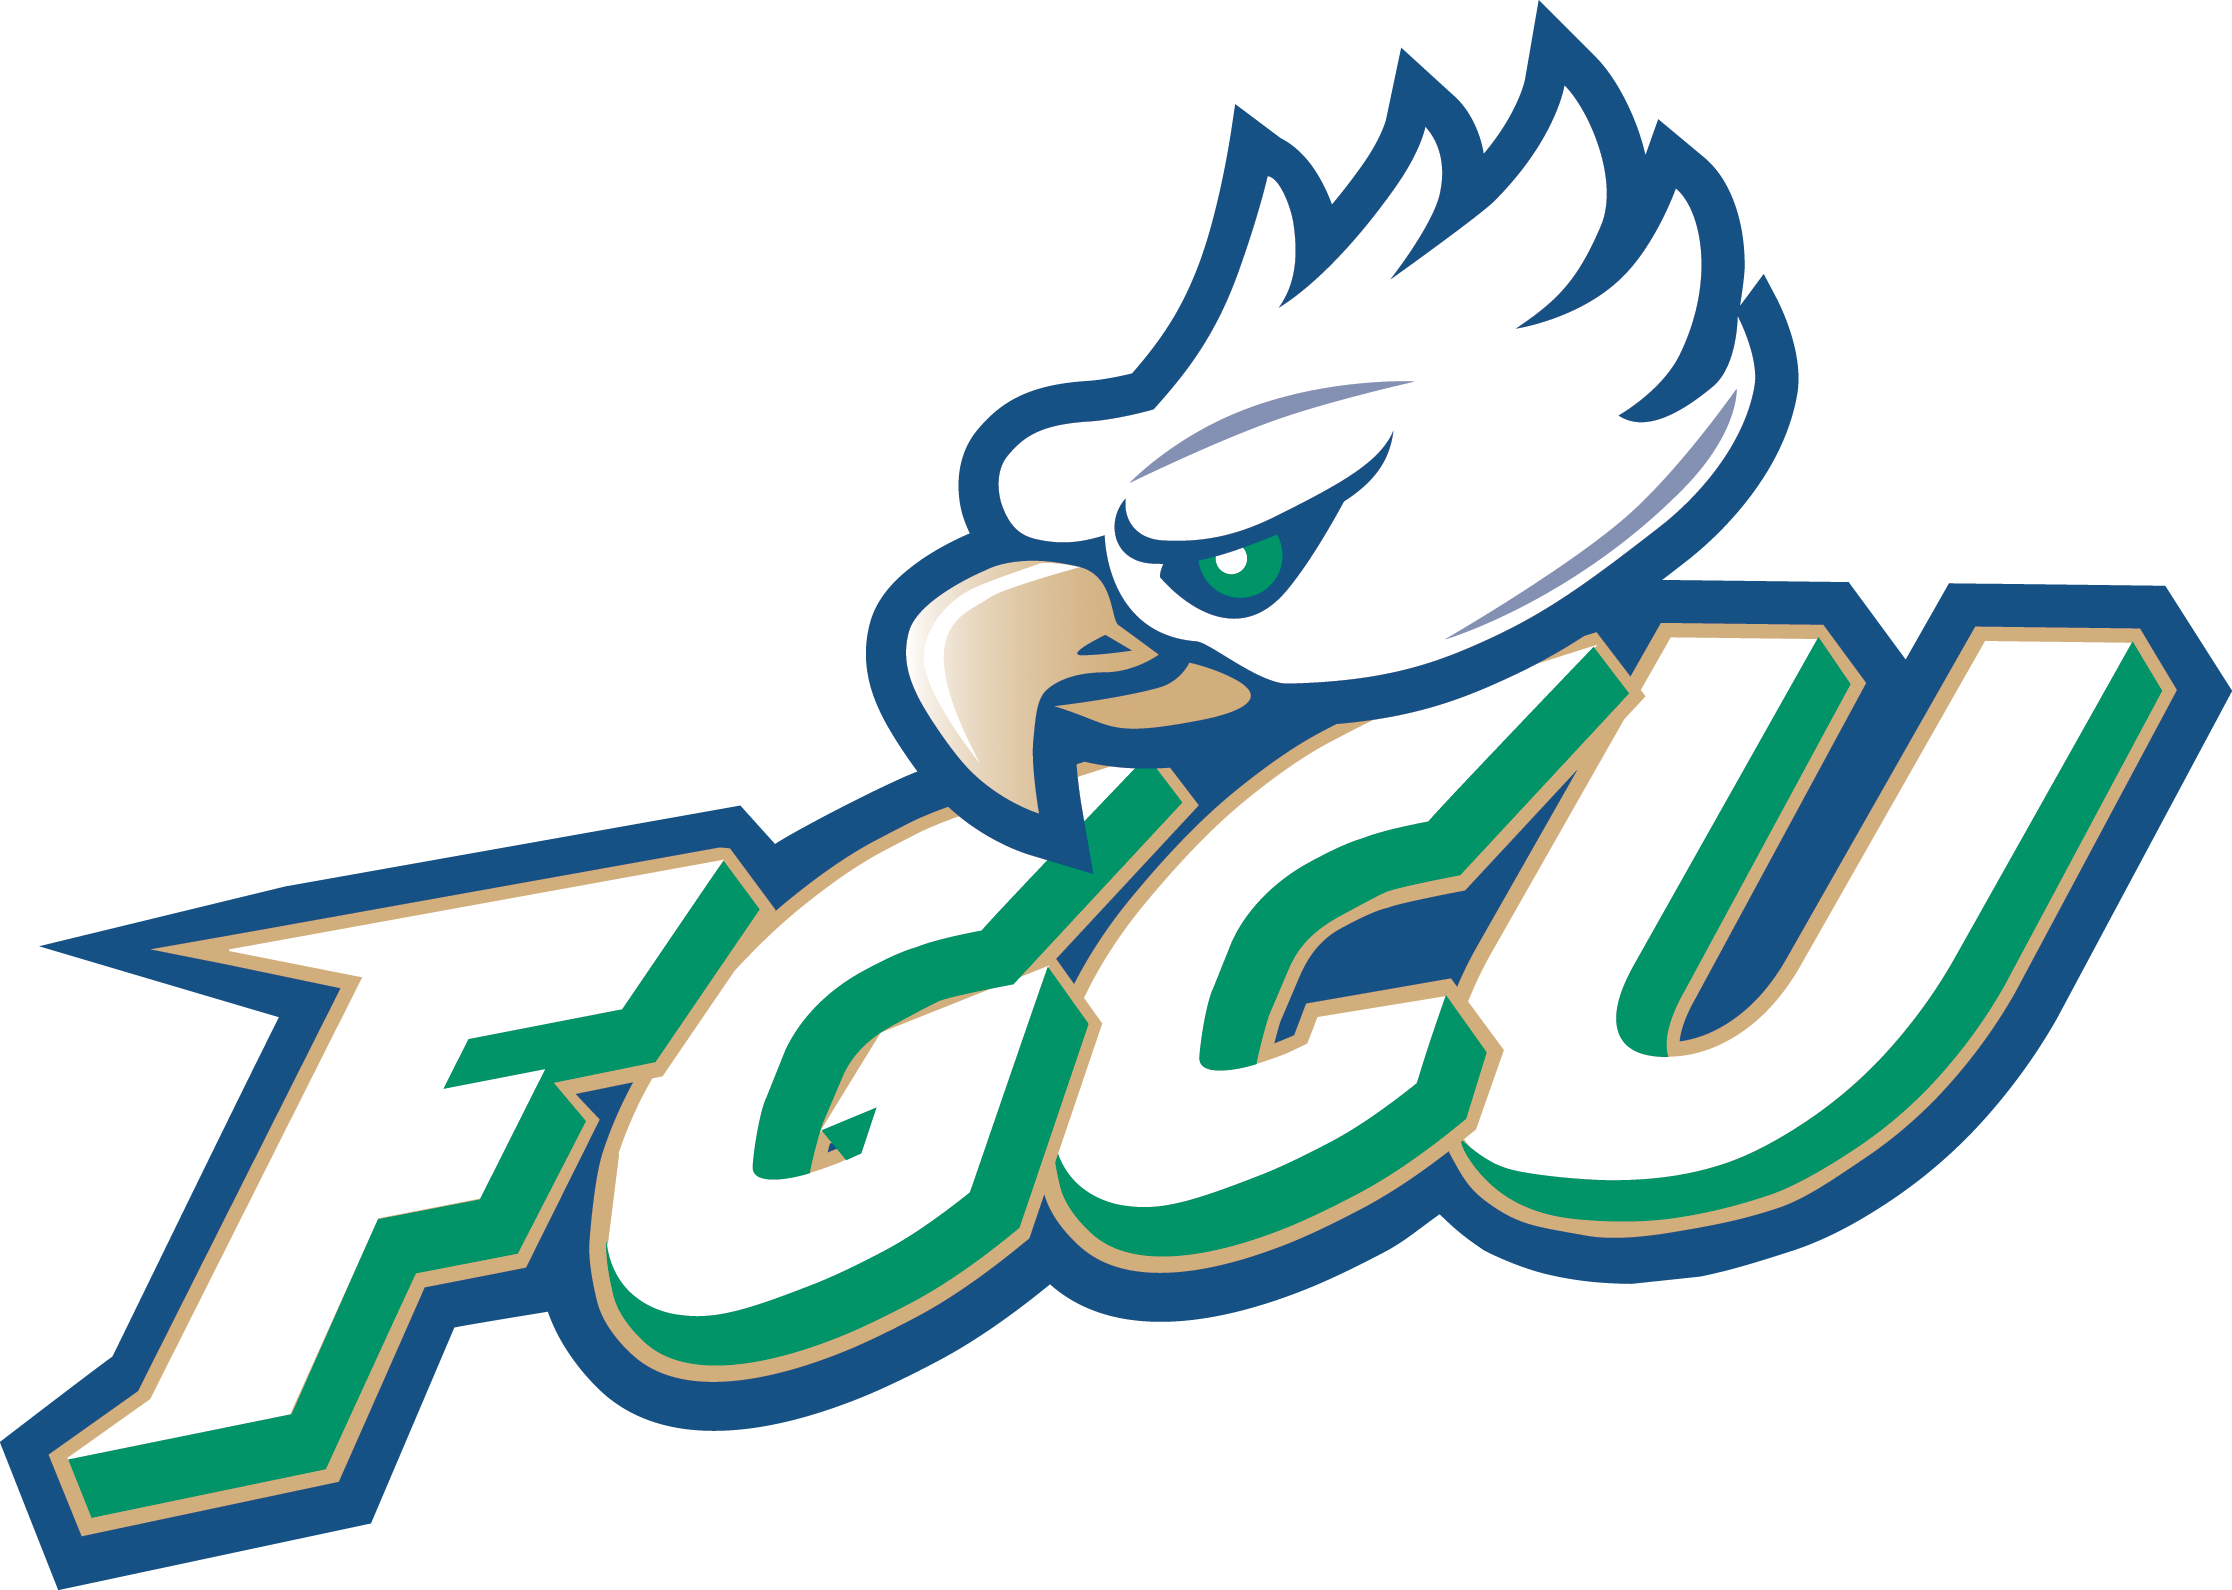 FGCU _ Eagle logo